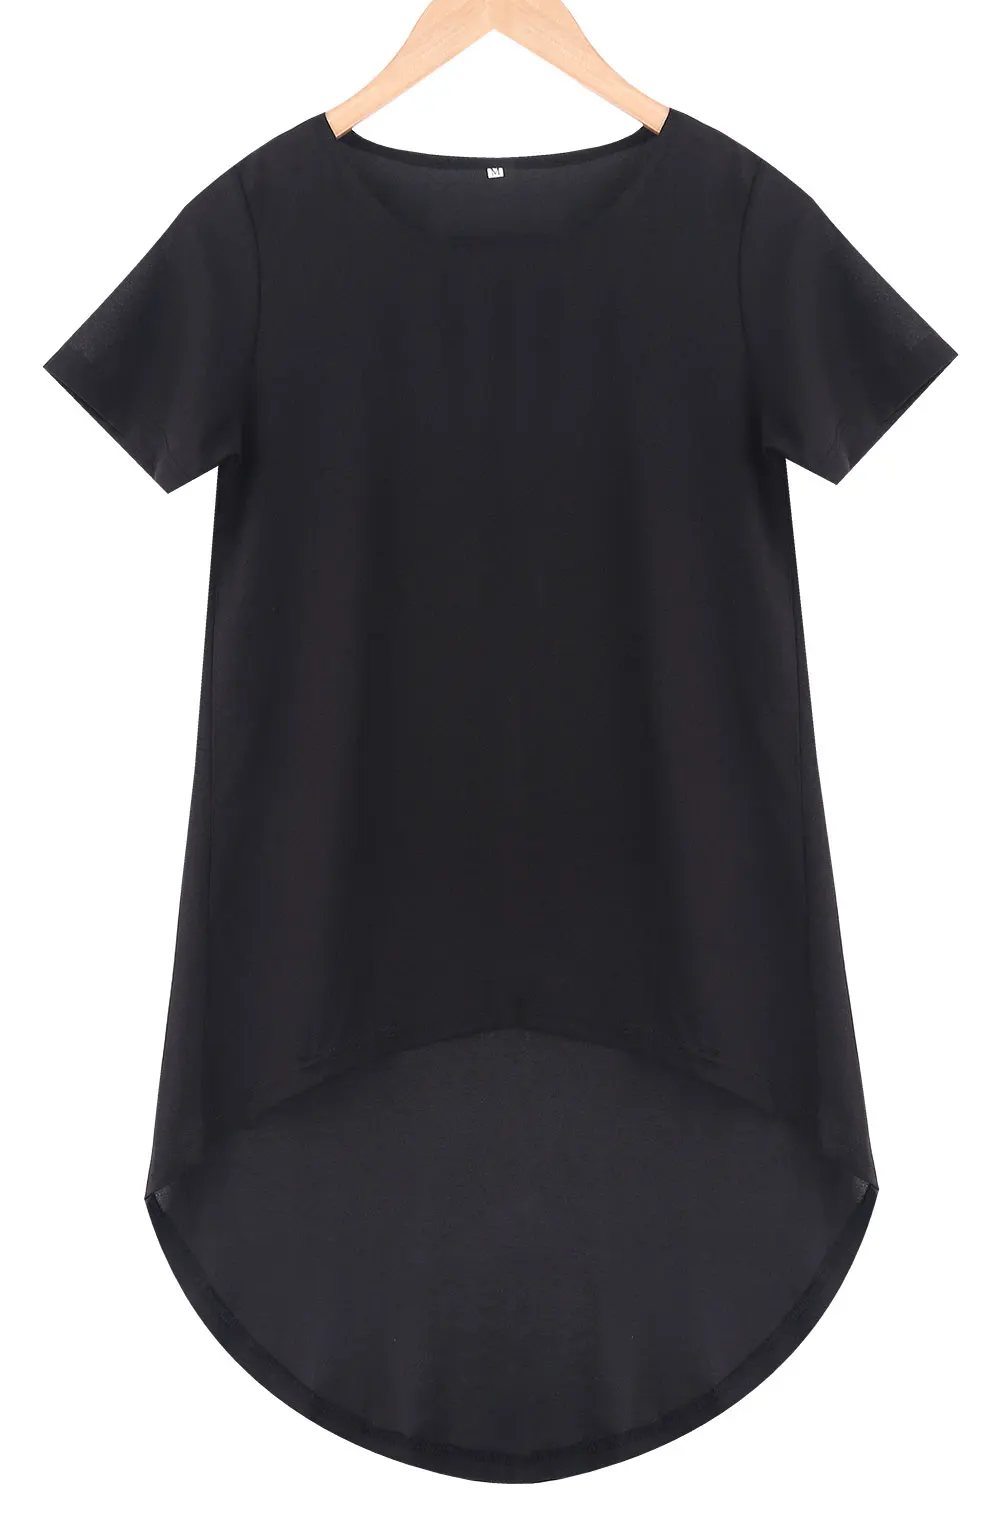 Сексуальная женская футболка макси с хвостом, модная летняя Свободная Женская Повседневная футболка с коротким рукавом,, бежевая черная футболка, топ размера плюс S-5XL